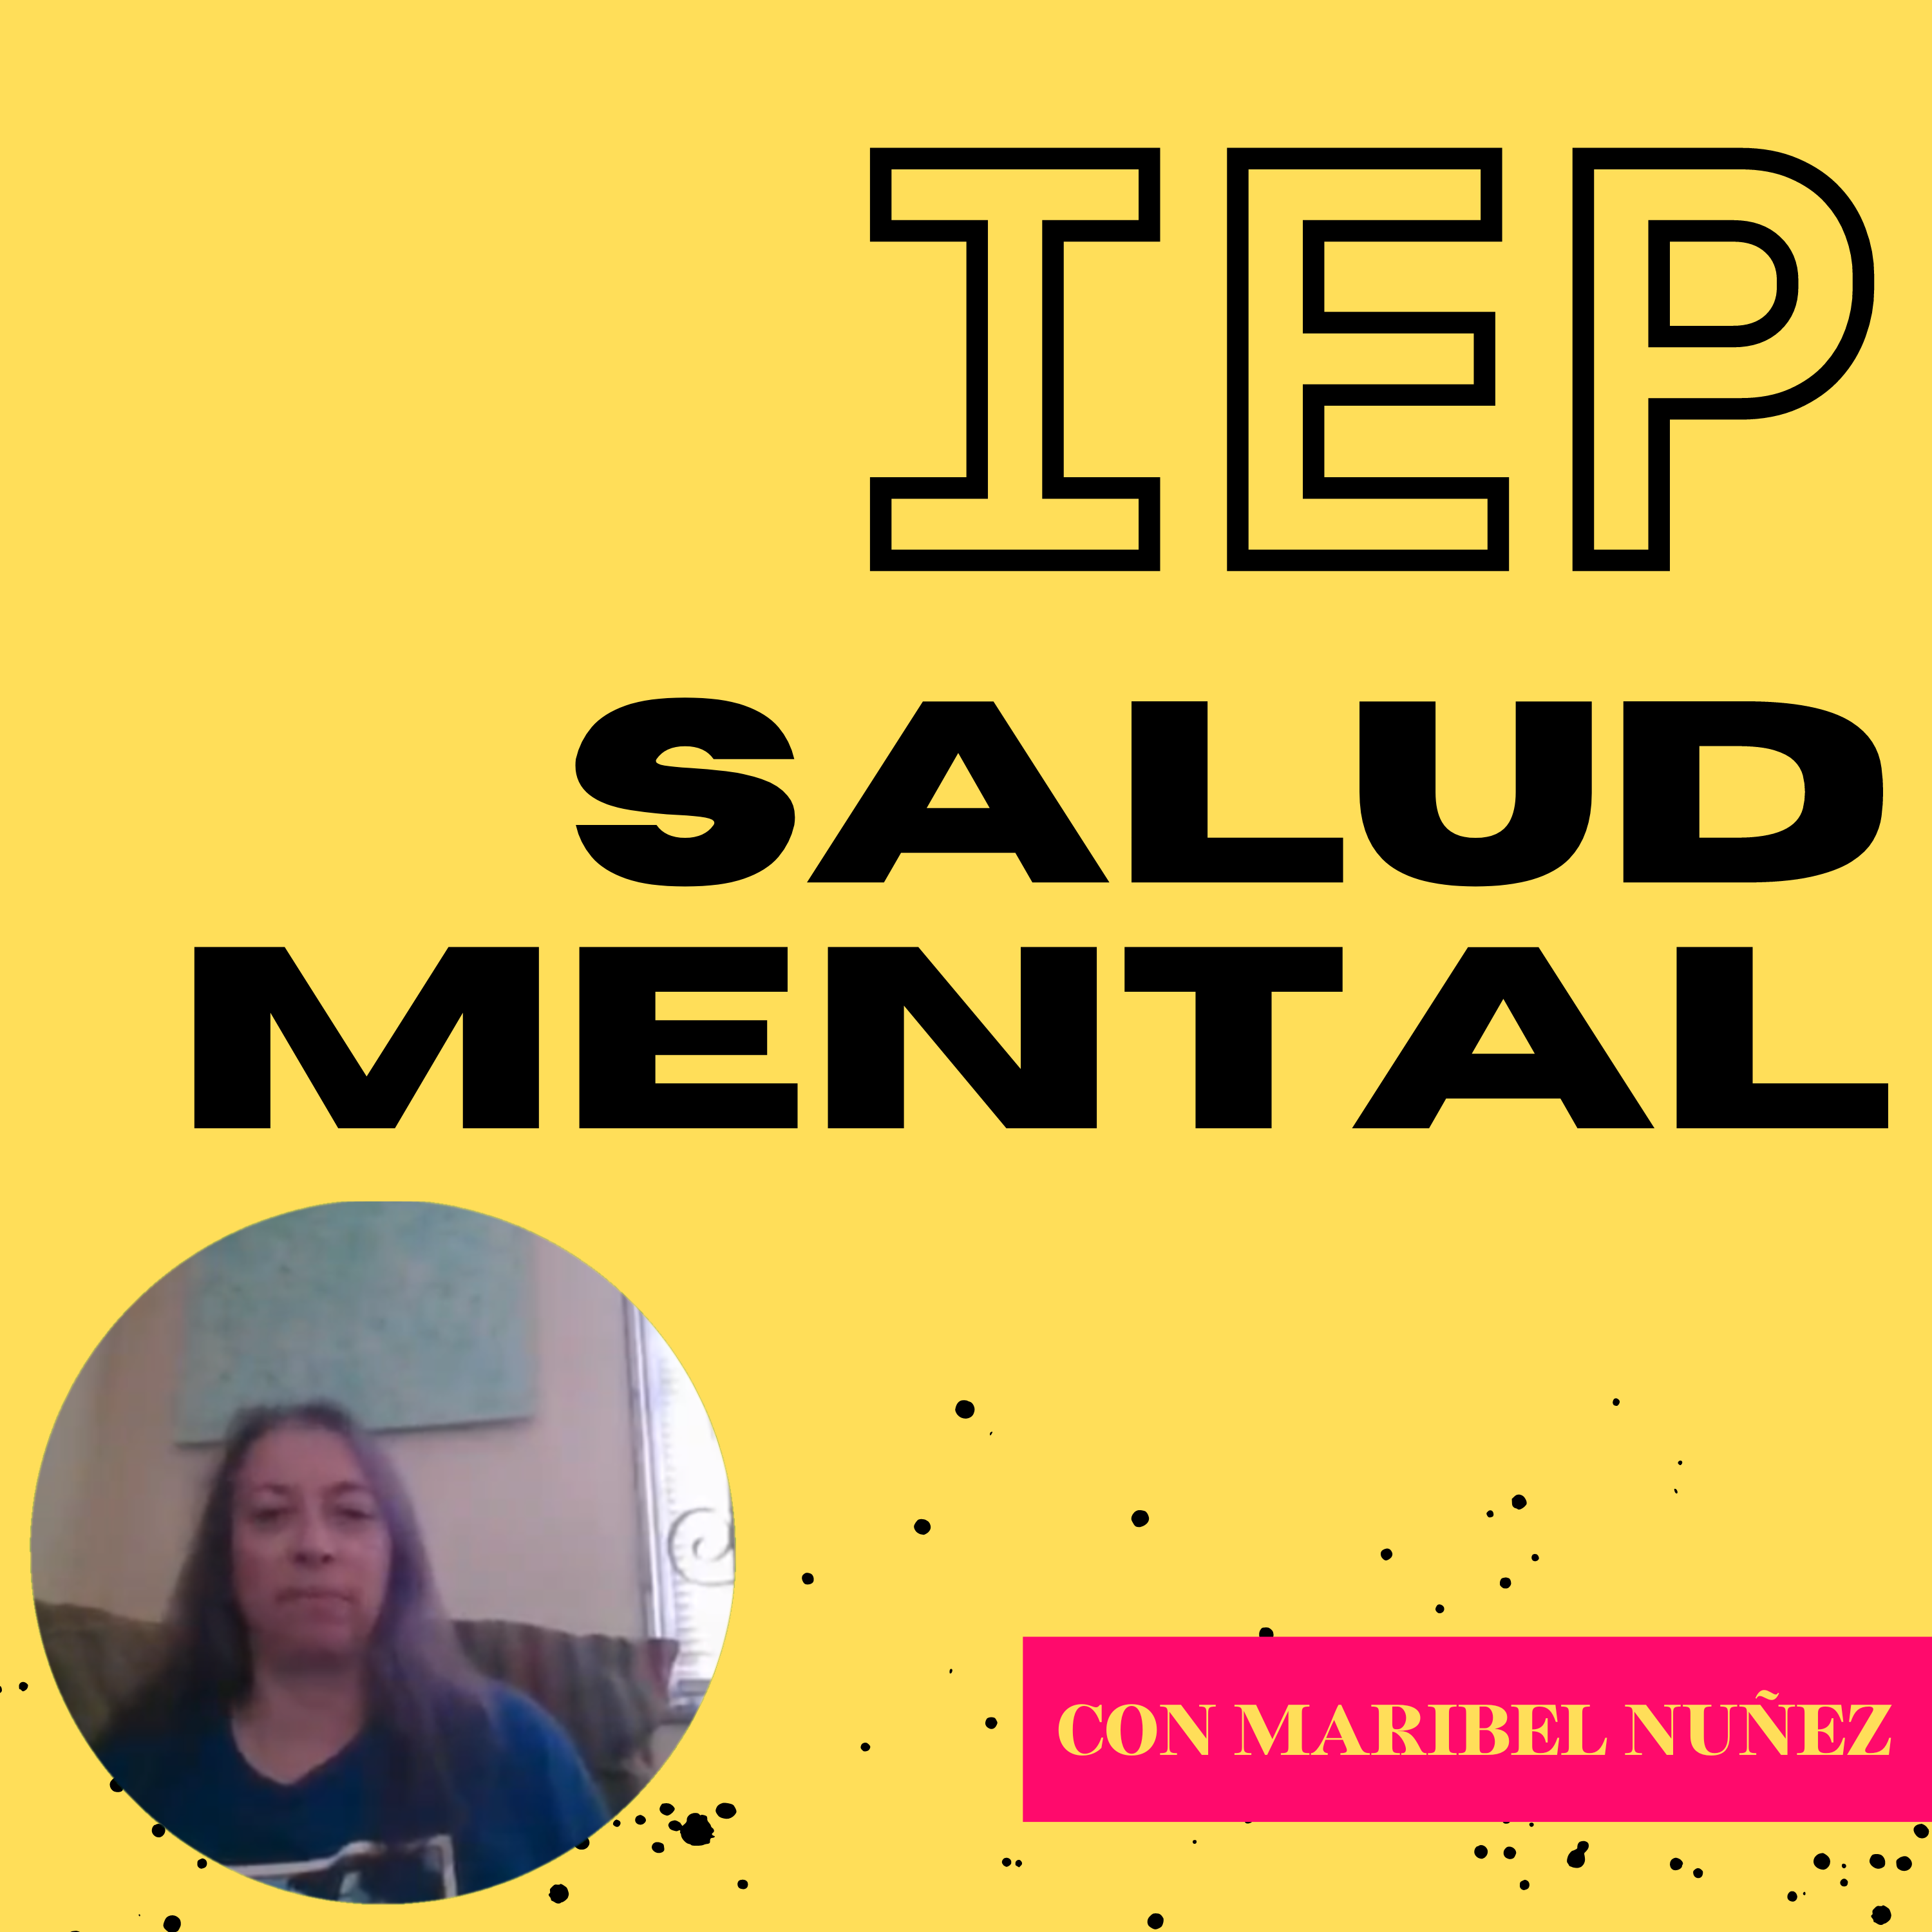 IEP Salud Mental